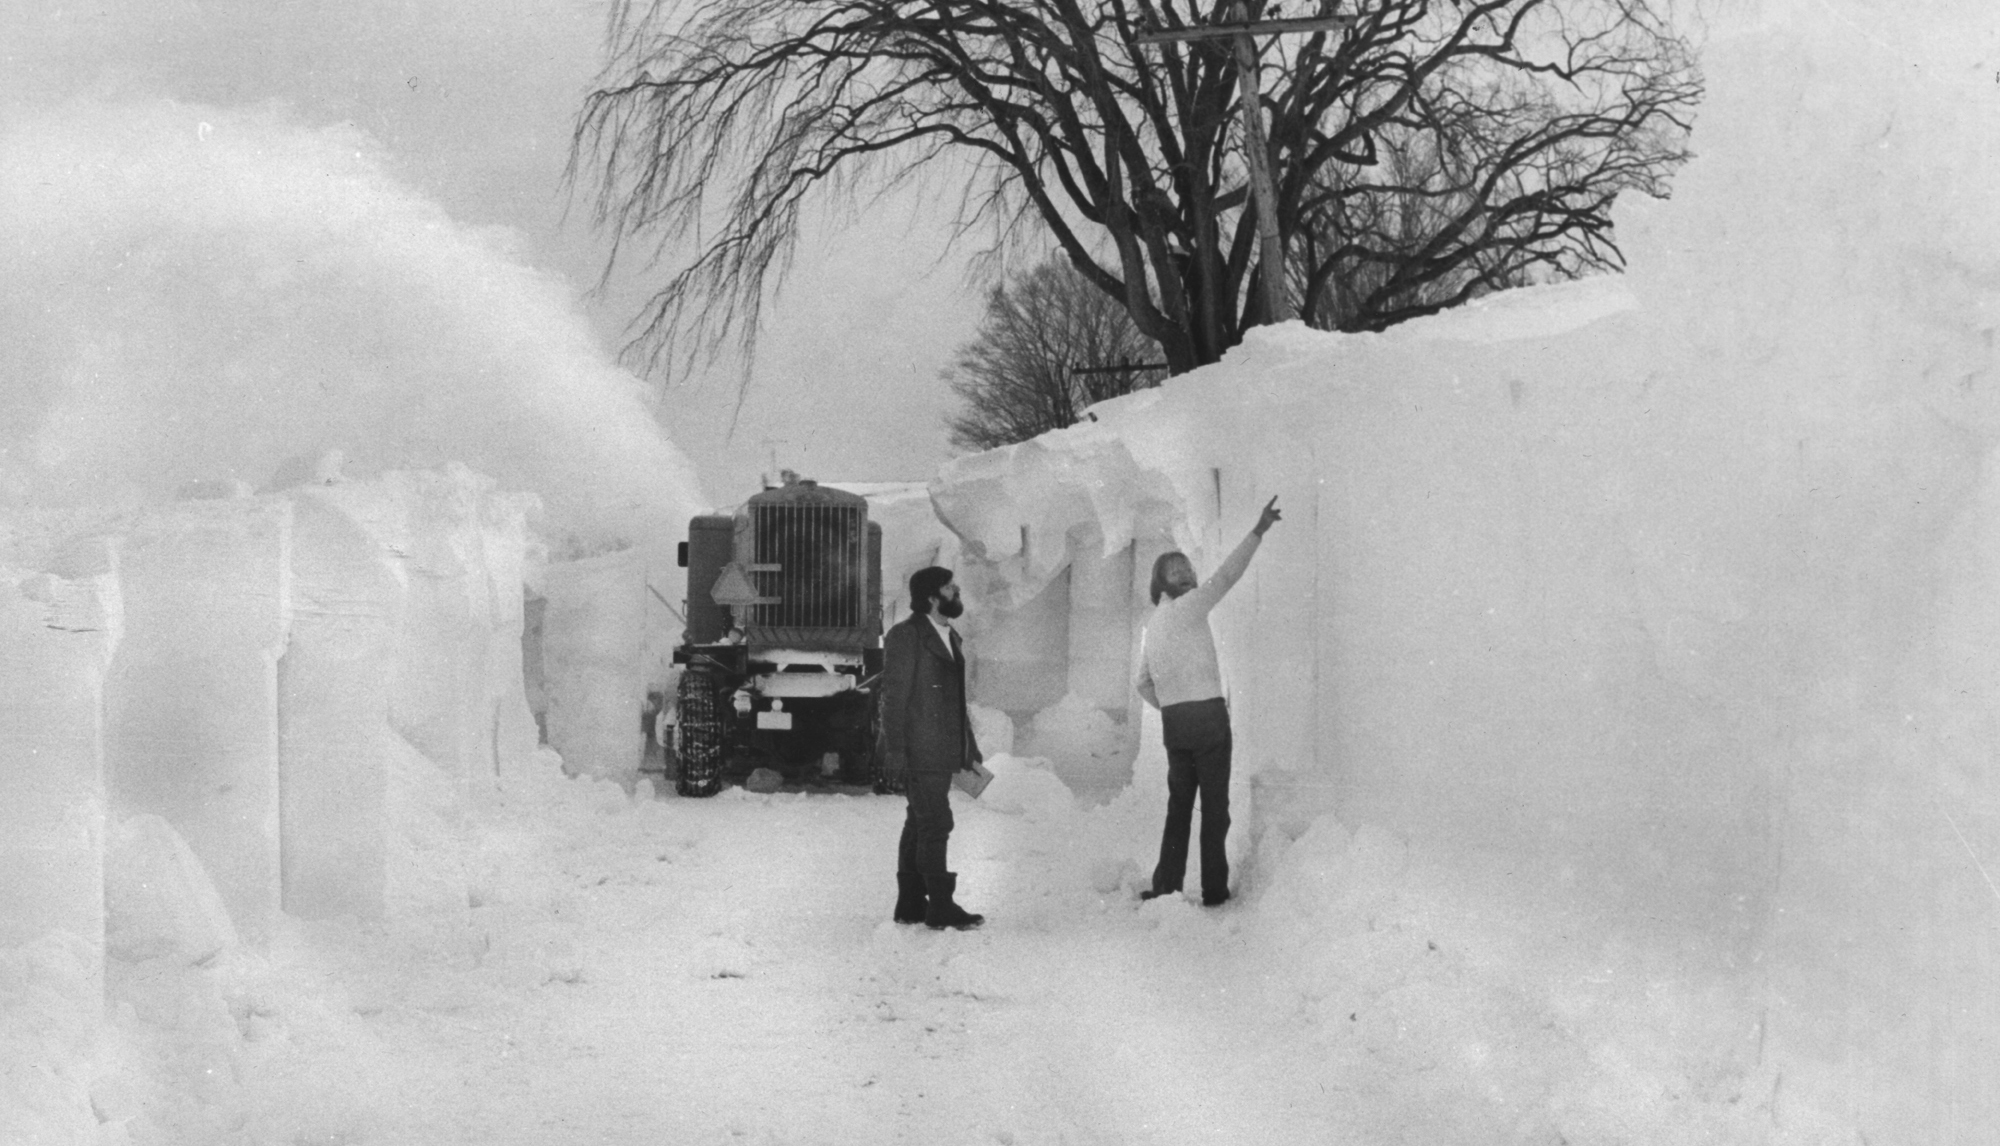 Сильнейшие бури в истории. Снегопад в Буффало в 1977 году. Снежная метель в Иране в 1972 году. Баффало, США 1977. Снежная буря в США 1977г.